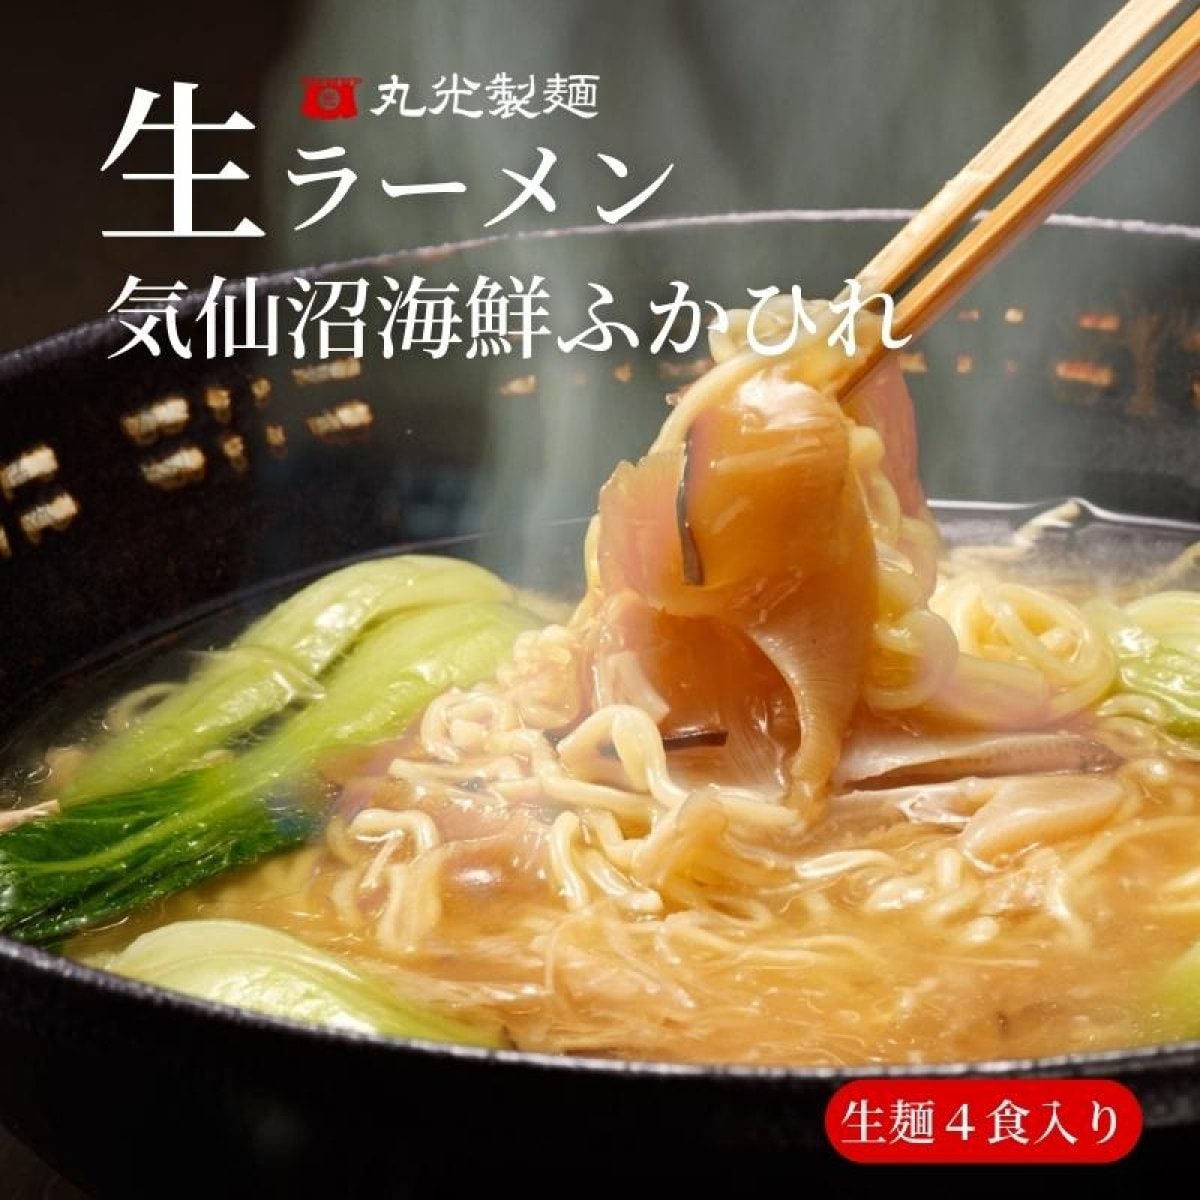 【生麺4食】ふかひれ姿煮入り生ラーメン ふかひれ餡と濃厚な魚介スープがからんだもちもちとした細麺　